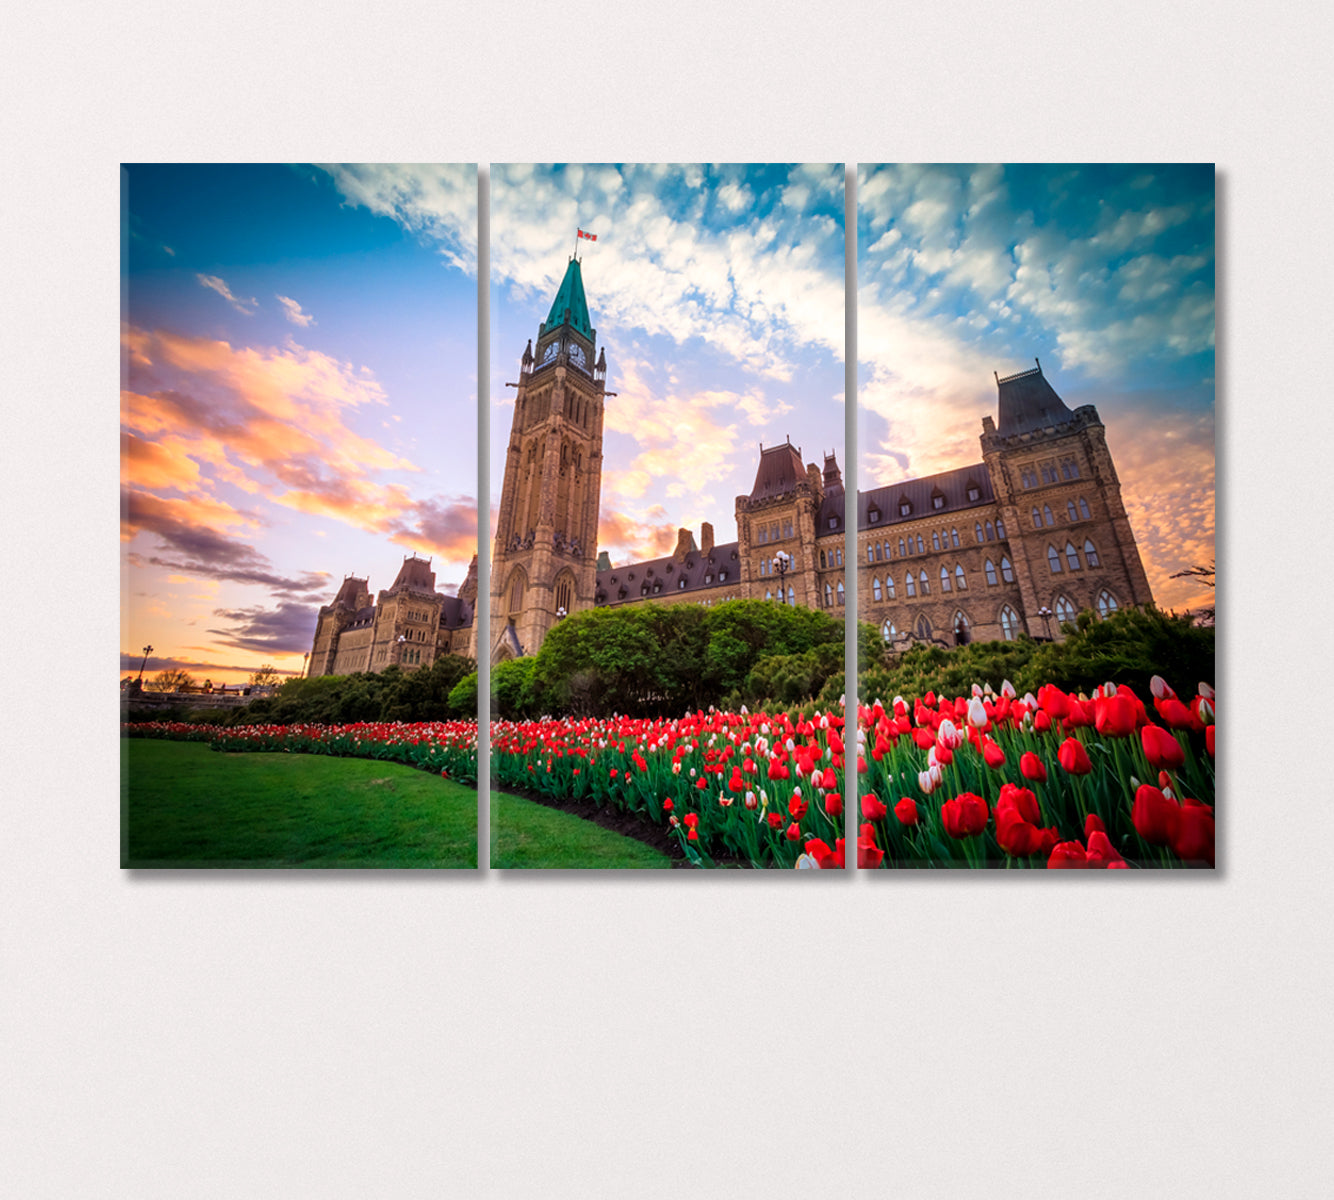 Parliament Building of Canada Canvas Print-Canvas Print-CetArt-3 Panels-36x24 inches-CetArt